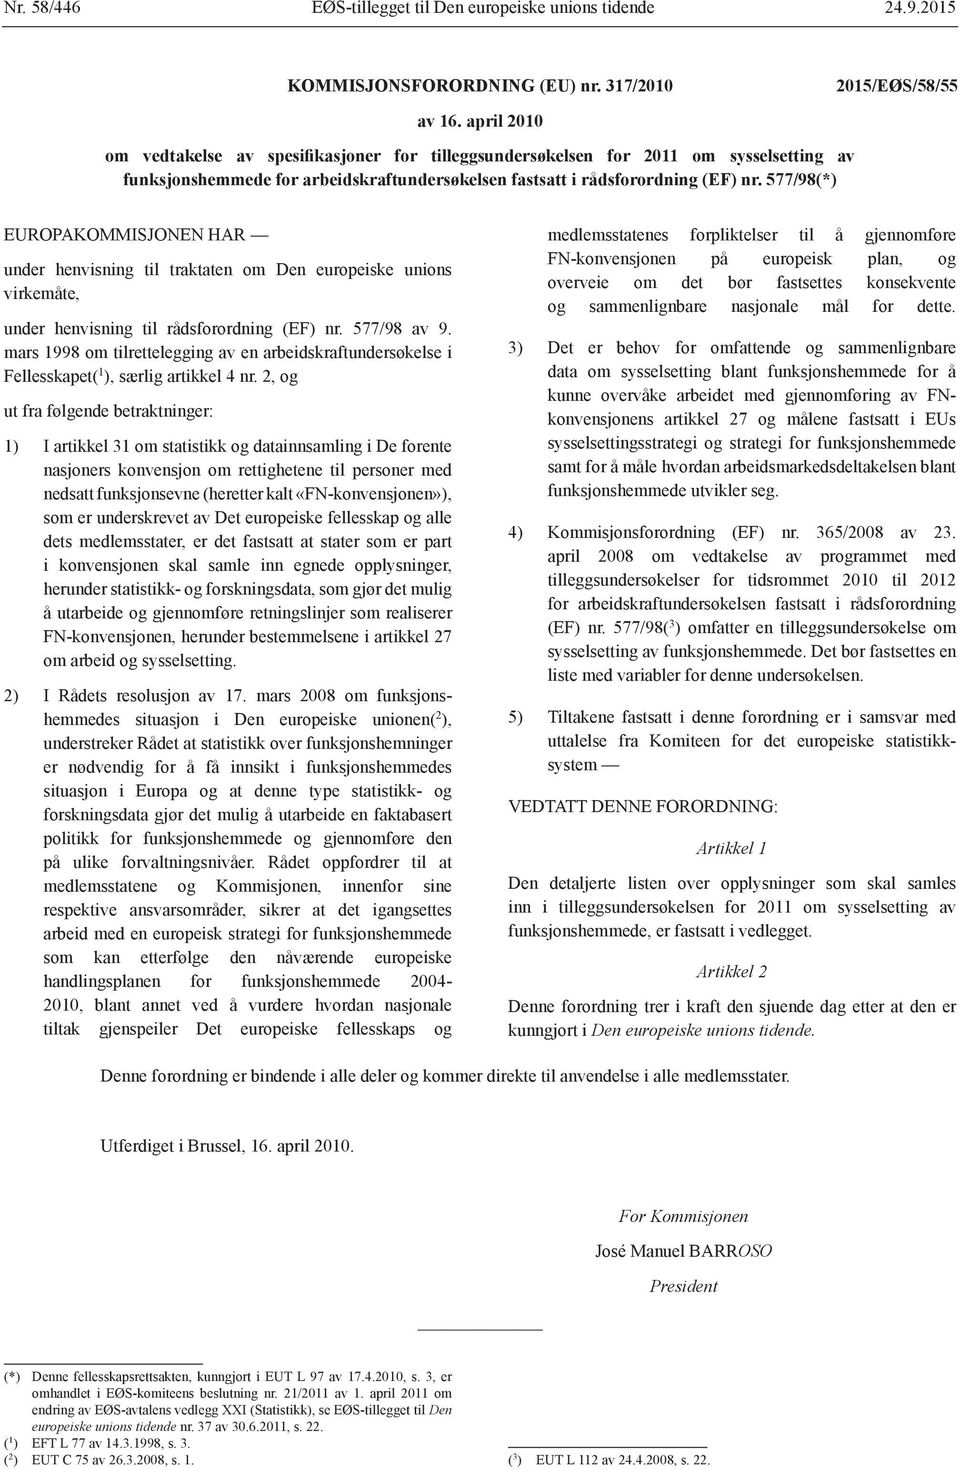 577/98(*) EUROPAKOMMISJONEN HAR under henvisning til traktaten om Den europeiske unions virkemåte, under henvisning til rådsforordning (EF) nr. 577/98 av 9.